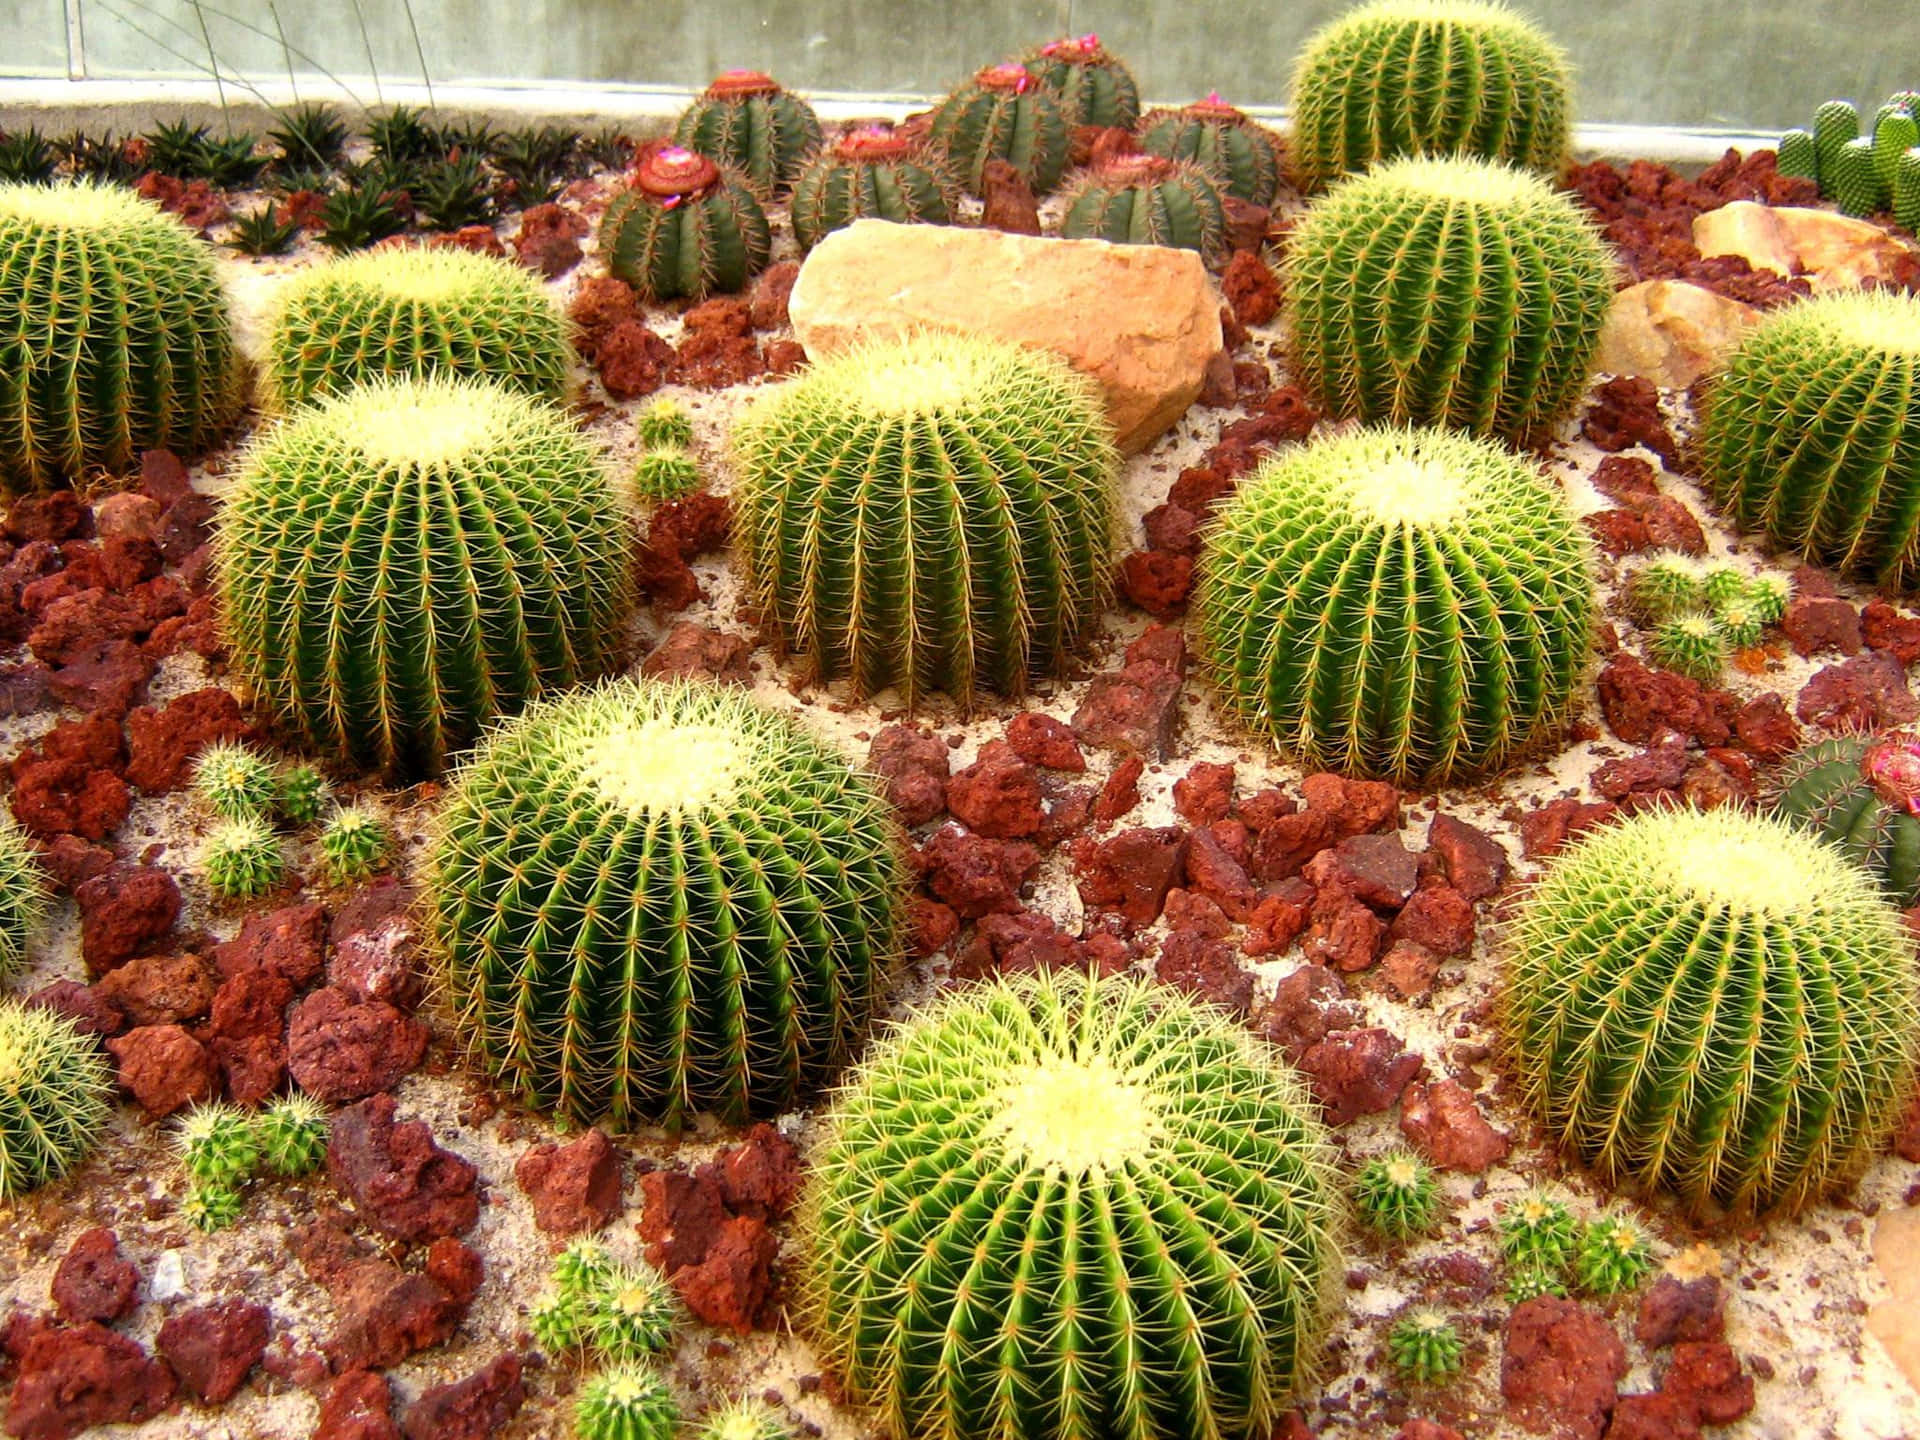 Carinafoto Di Cactus A Barile Dorato